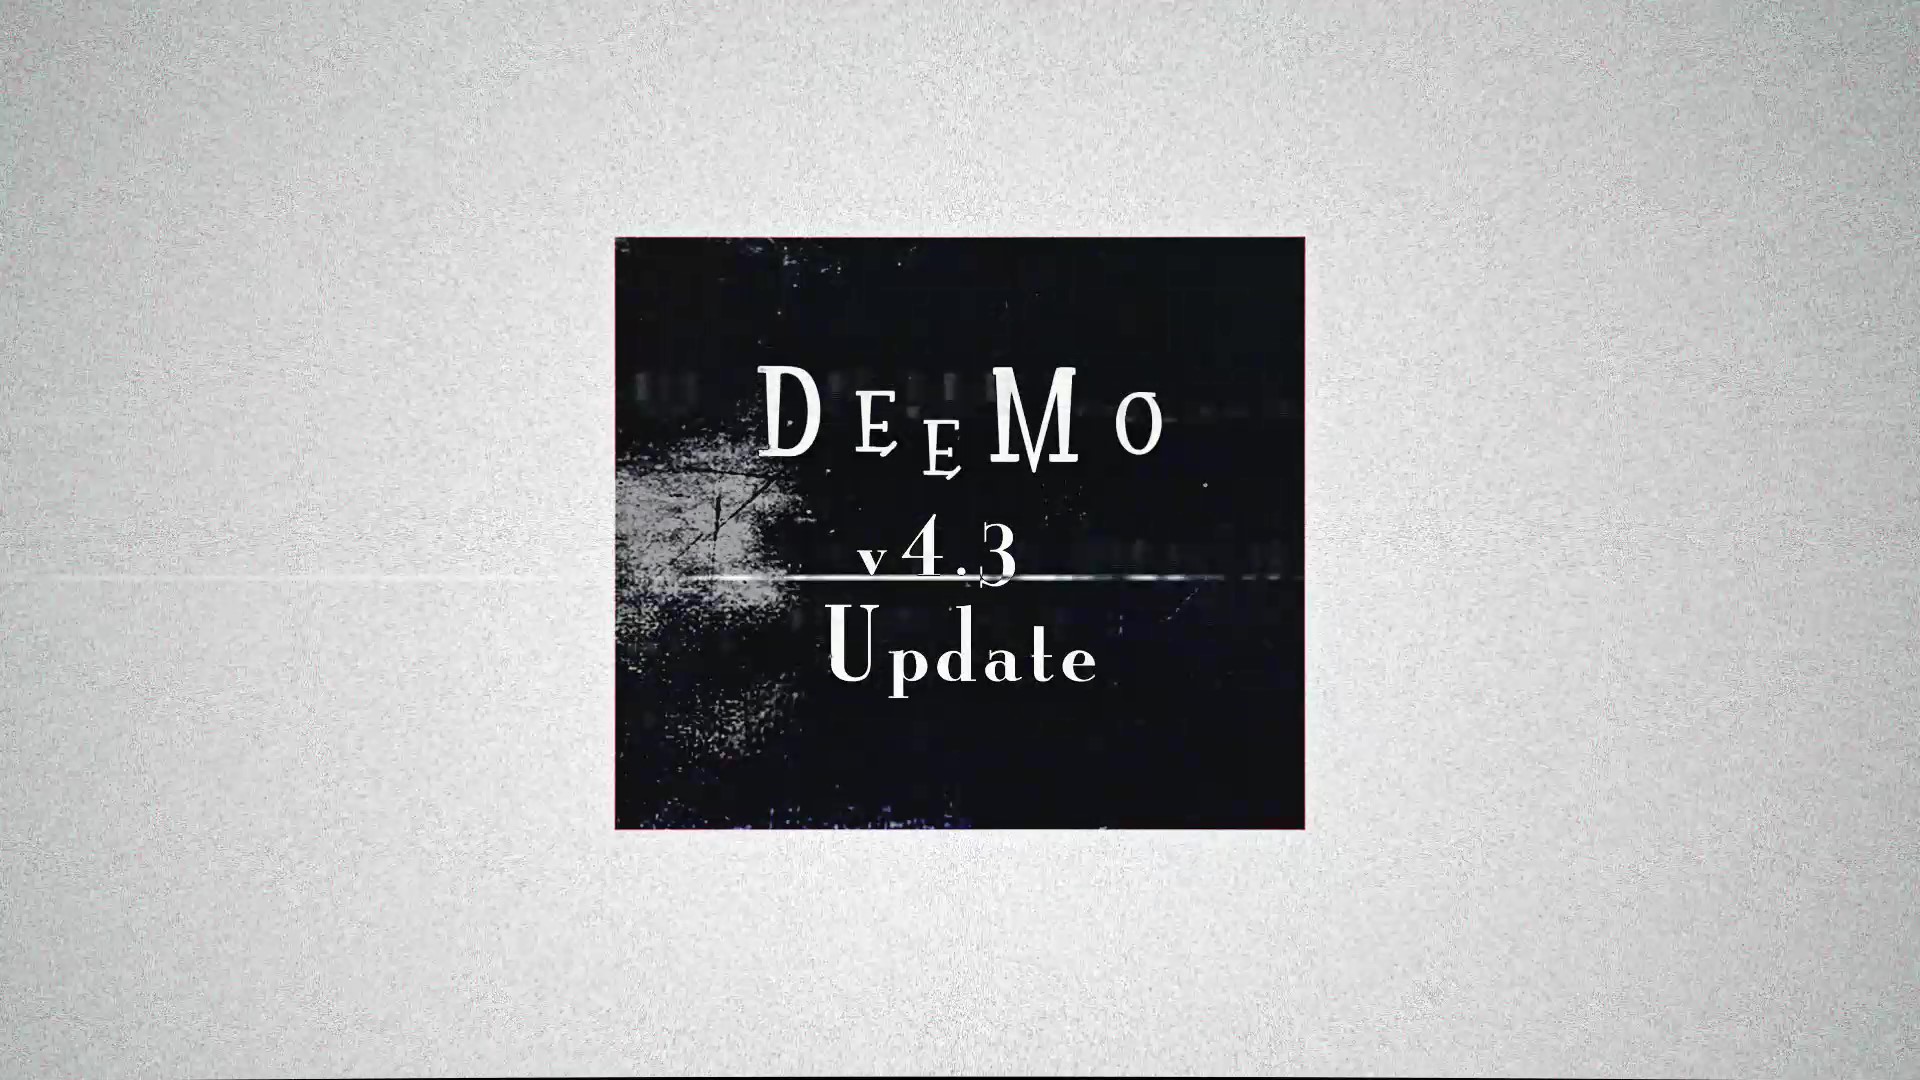 DEEMO古树旋律 v4.3.0 现已更新！